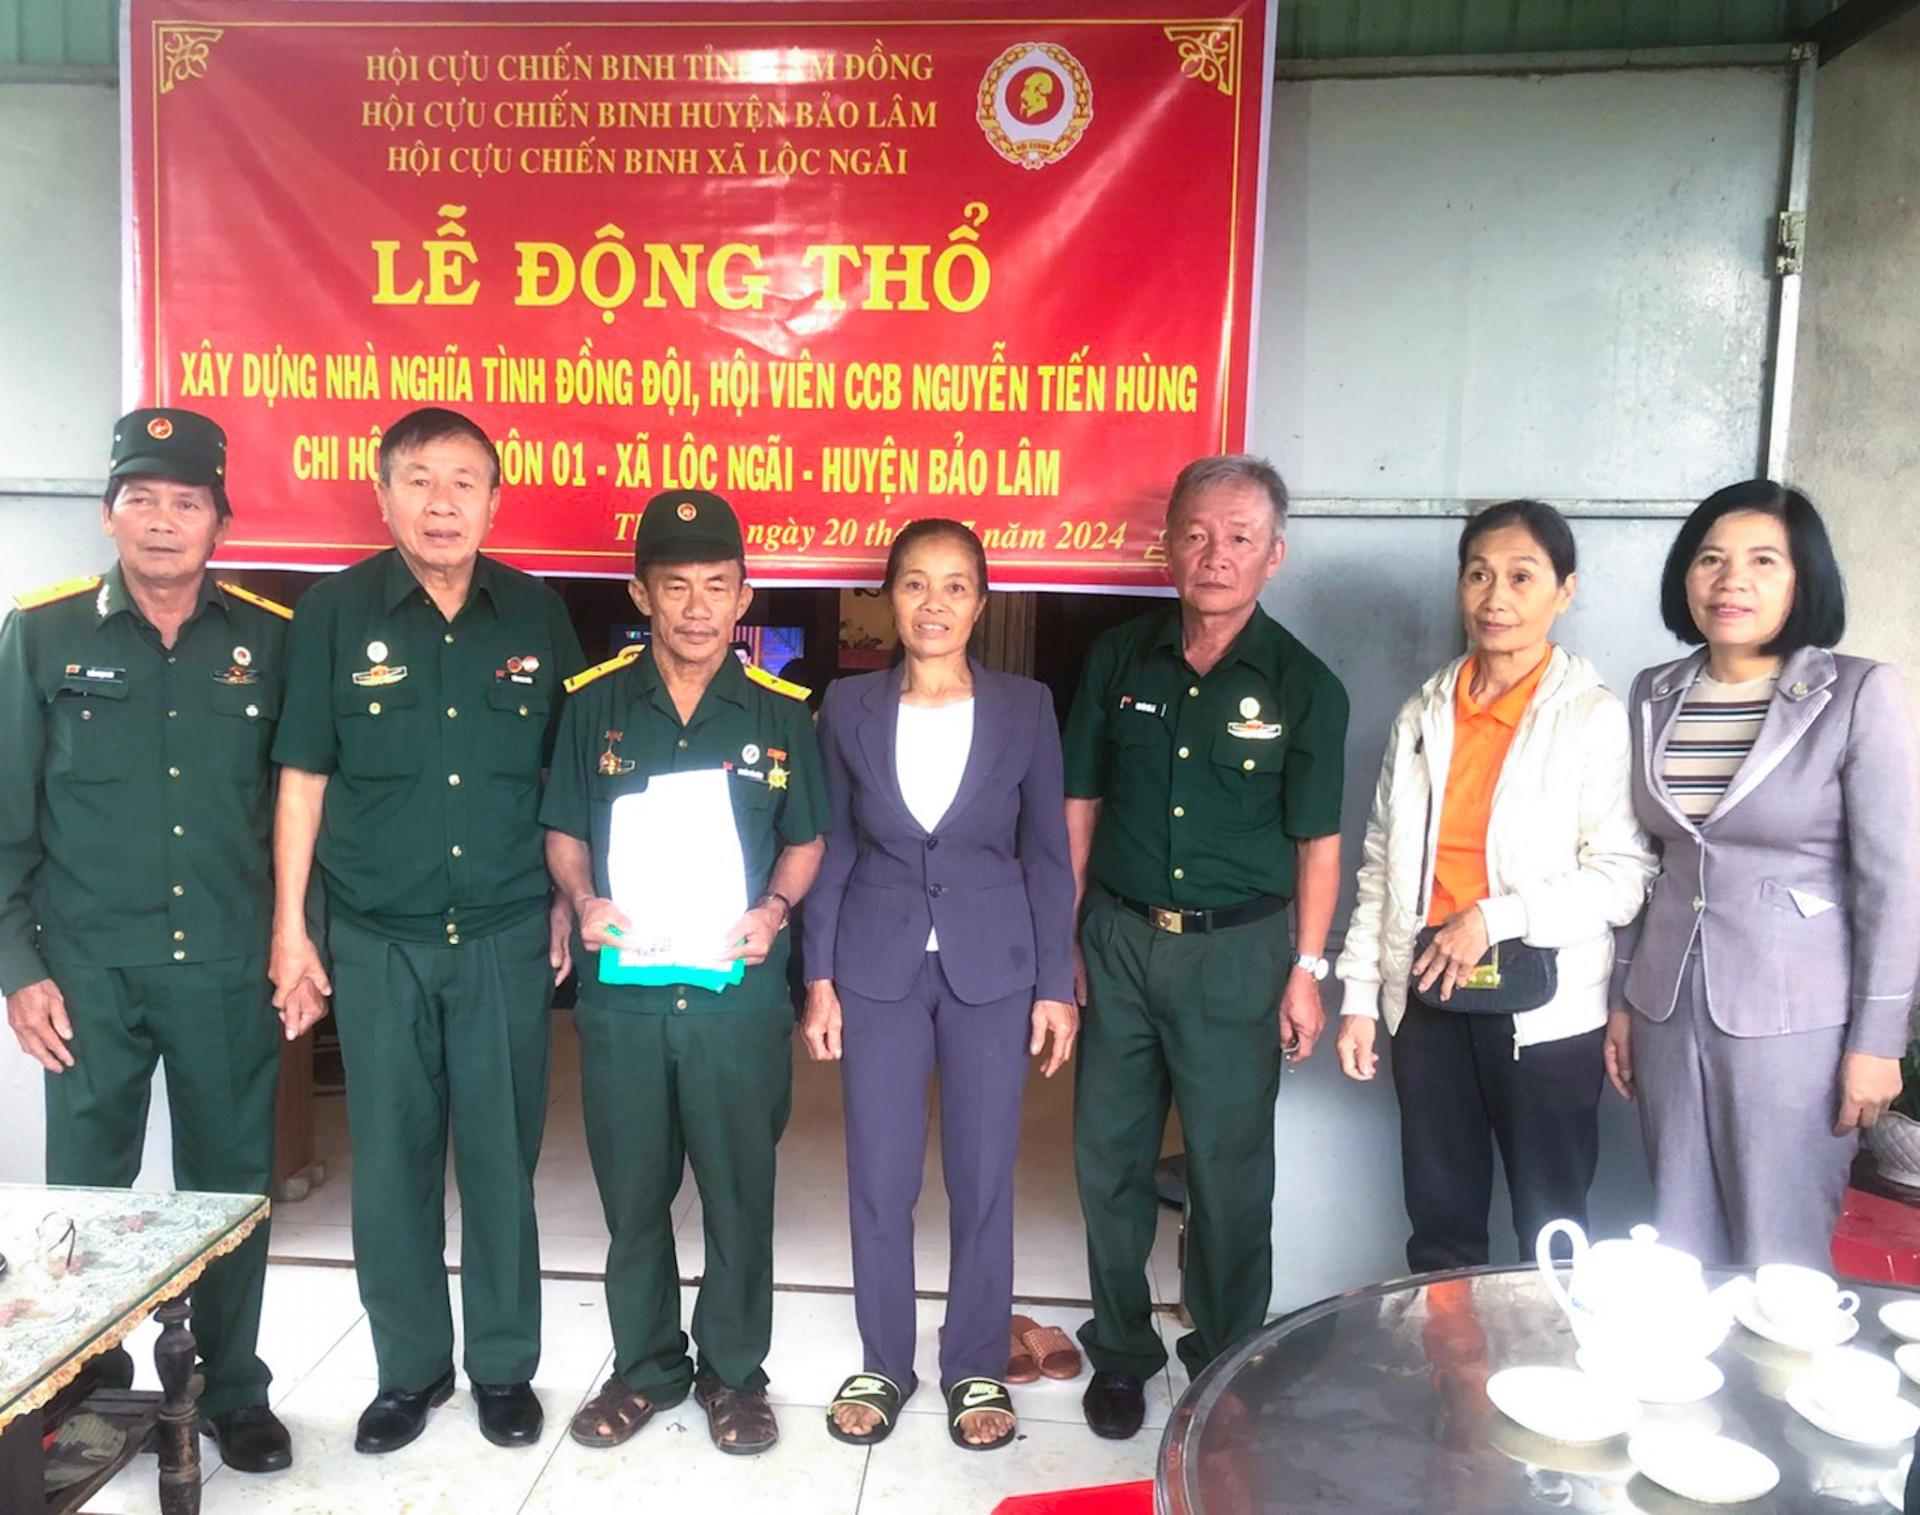 Trao hỗ trợ xây dựng nhà cho gia đình CCB Nguyễn Tiến Hùng 